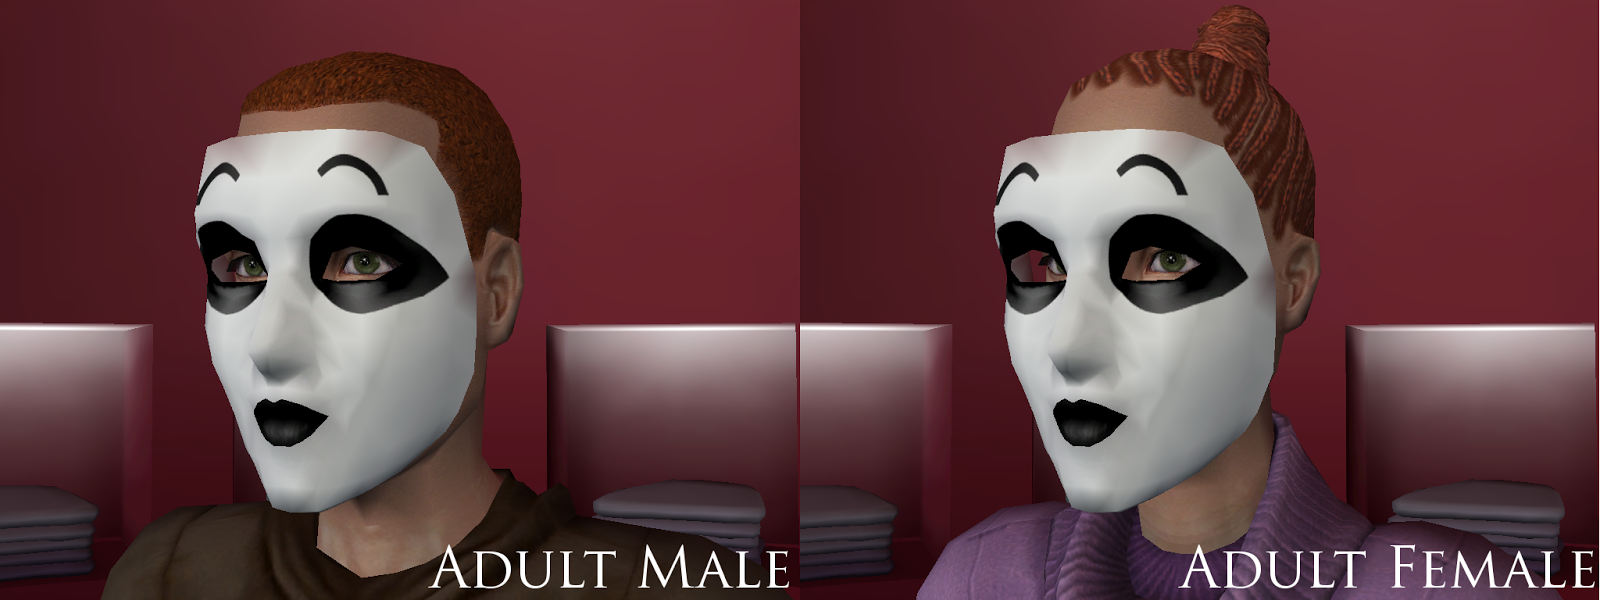 Sims 4 CC Creepypasta Masky